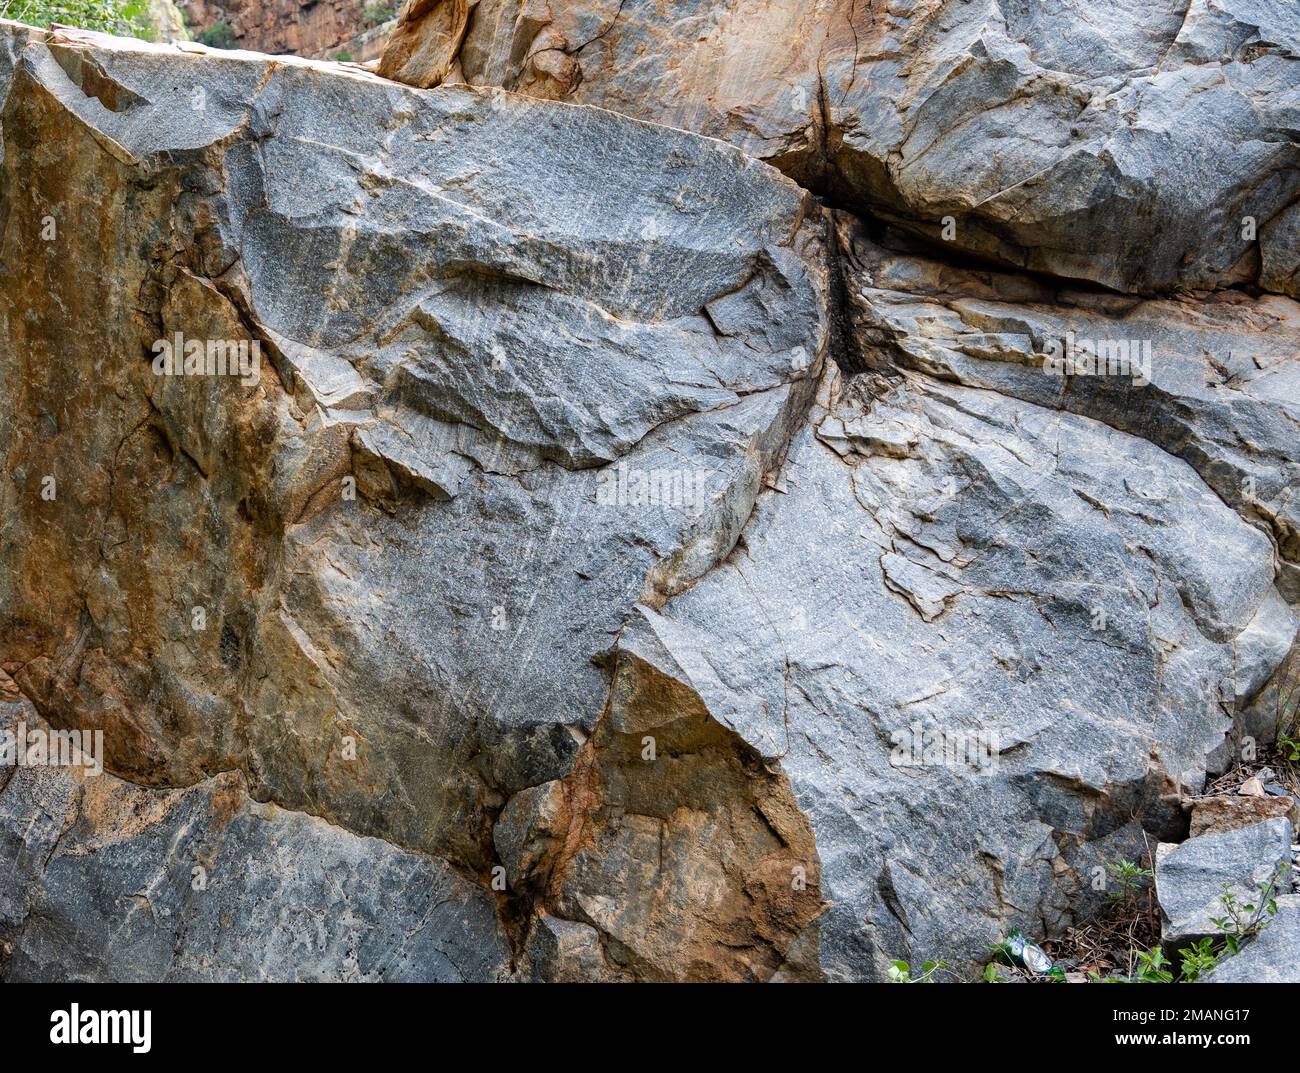 Letti a croce ben conservati nella pietra arenaria precambriana. Capo Settentrionale, Sudafrica. Foto Stock